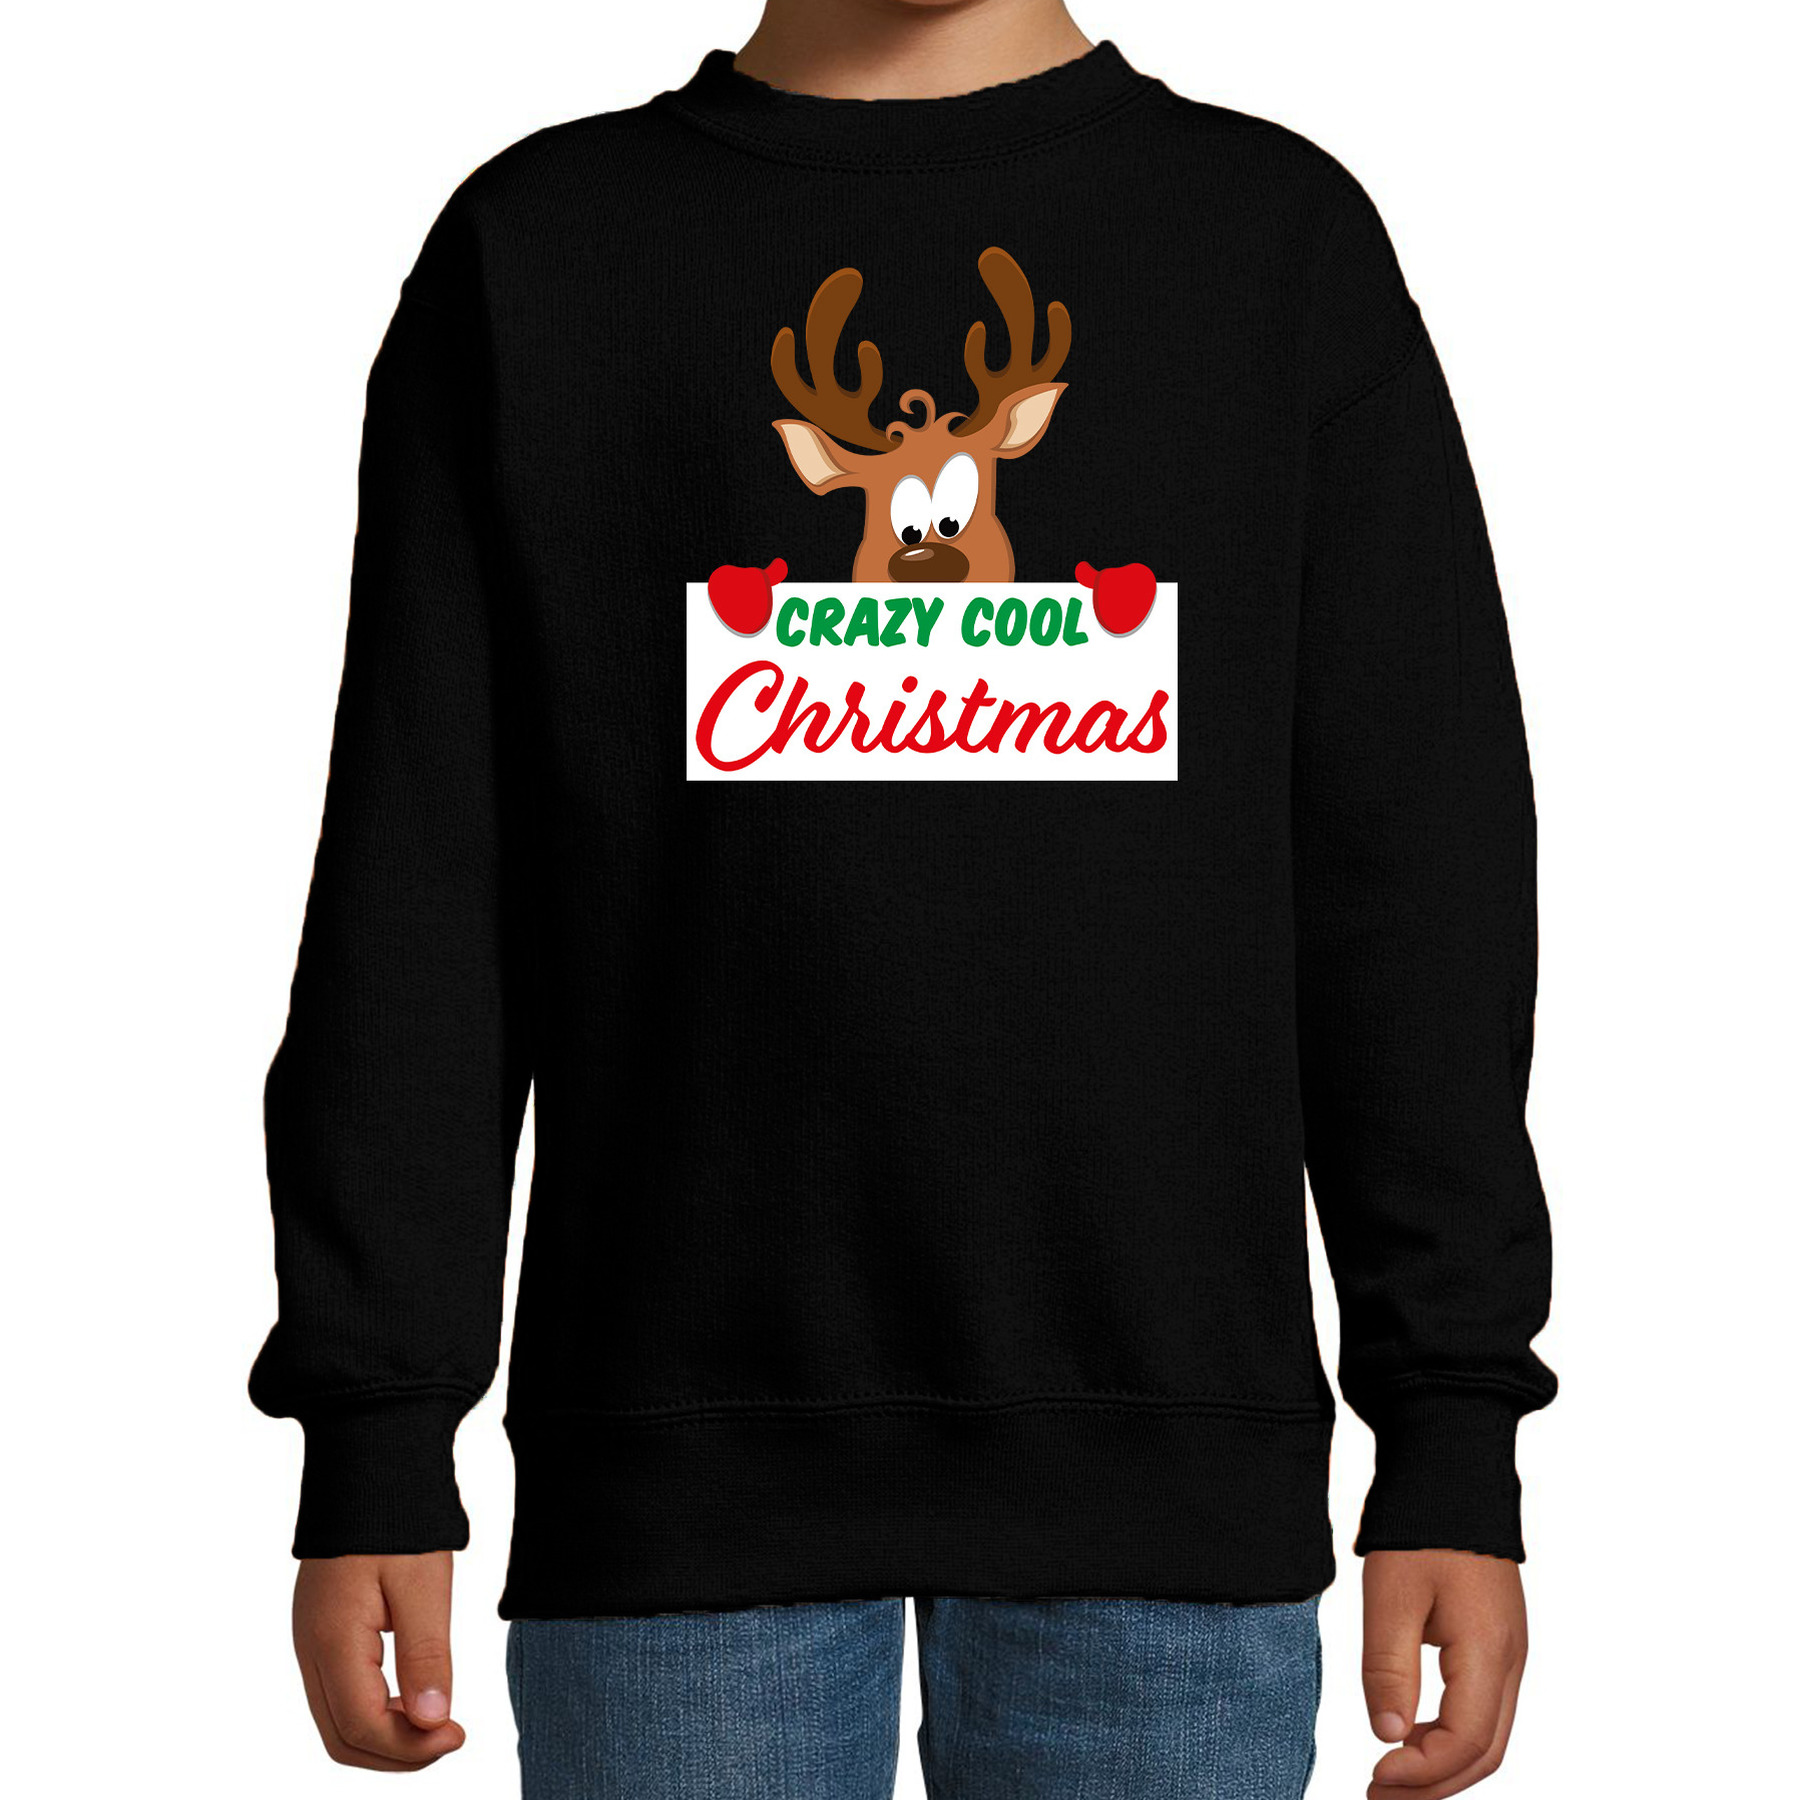 Crazy cool Christmas Kerstsweater - Kersttrui zwart voor kinderen